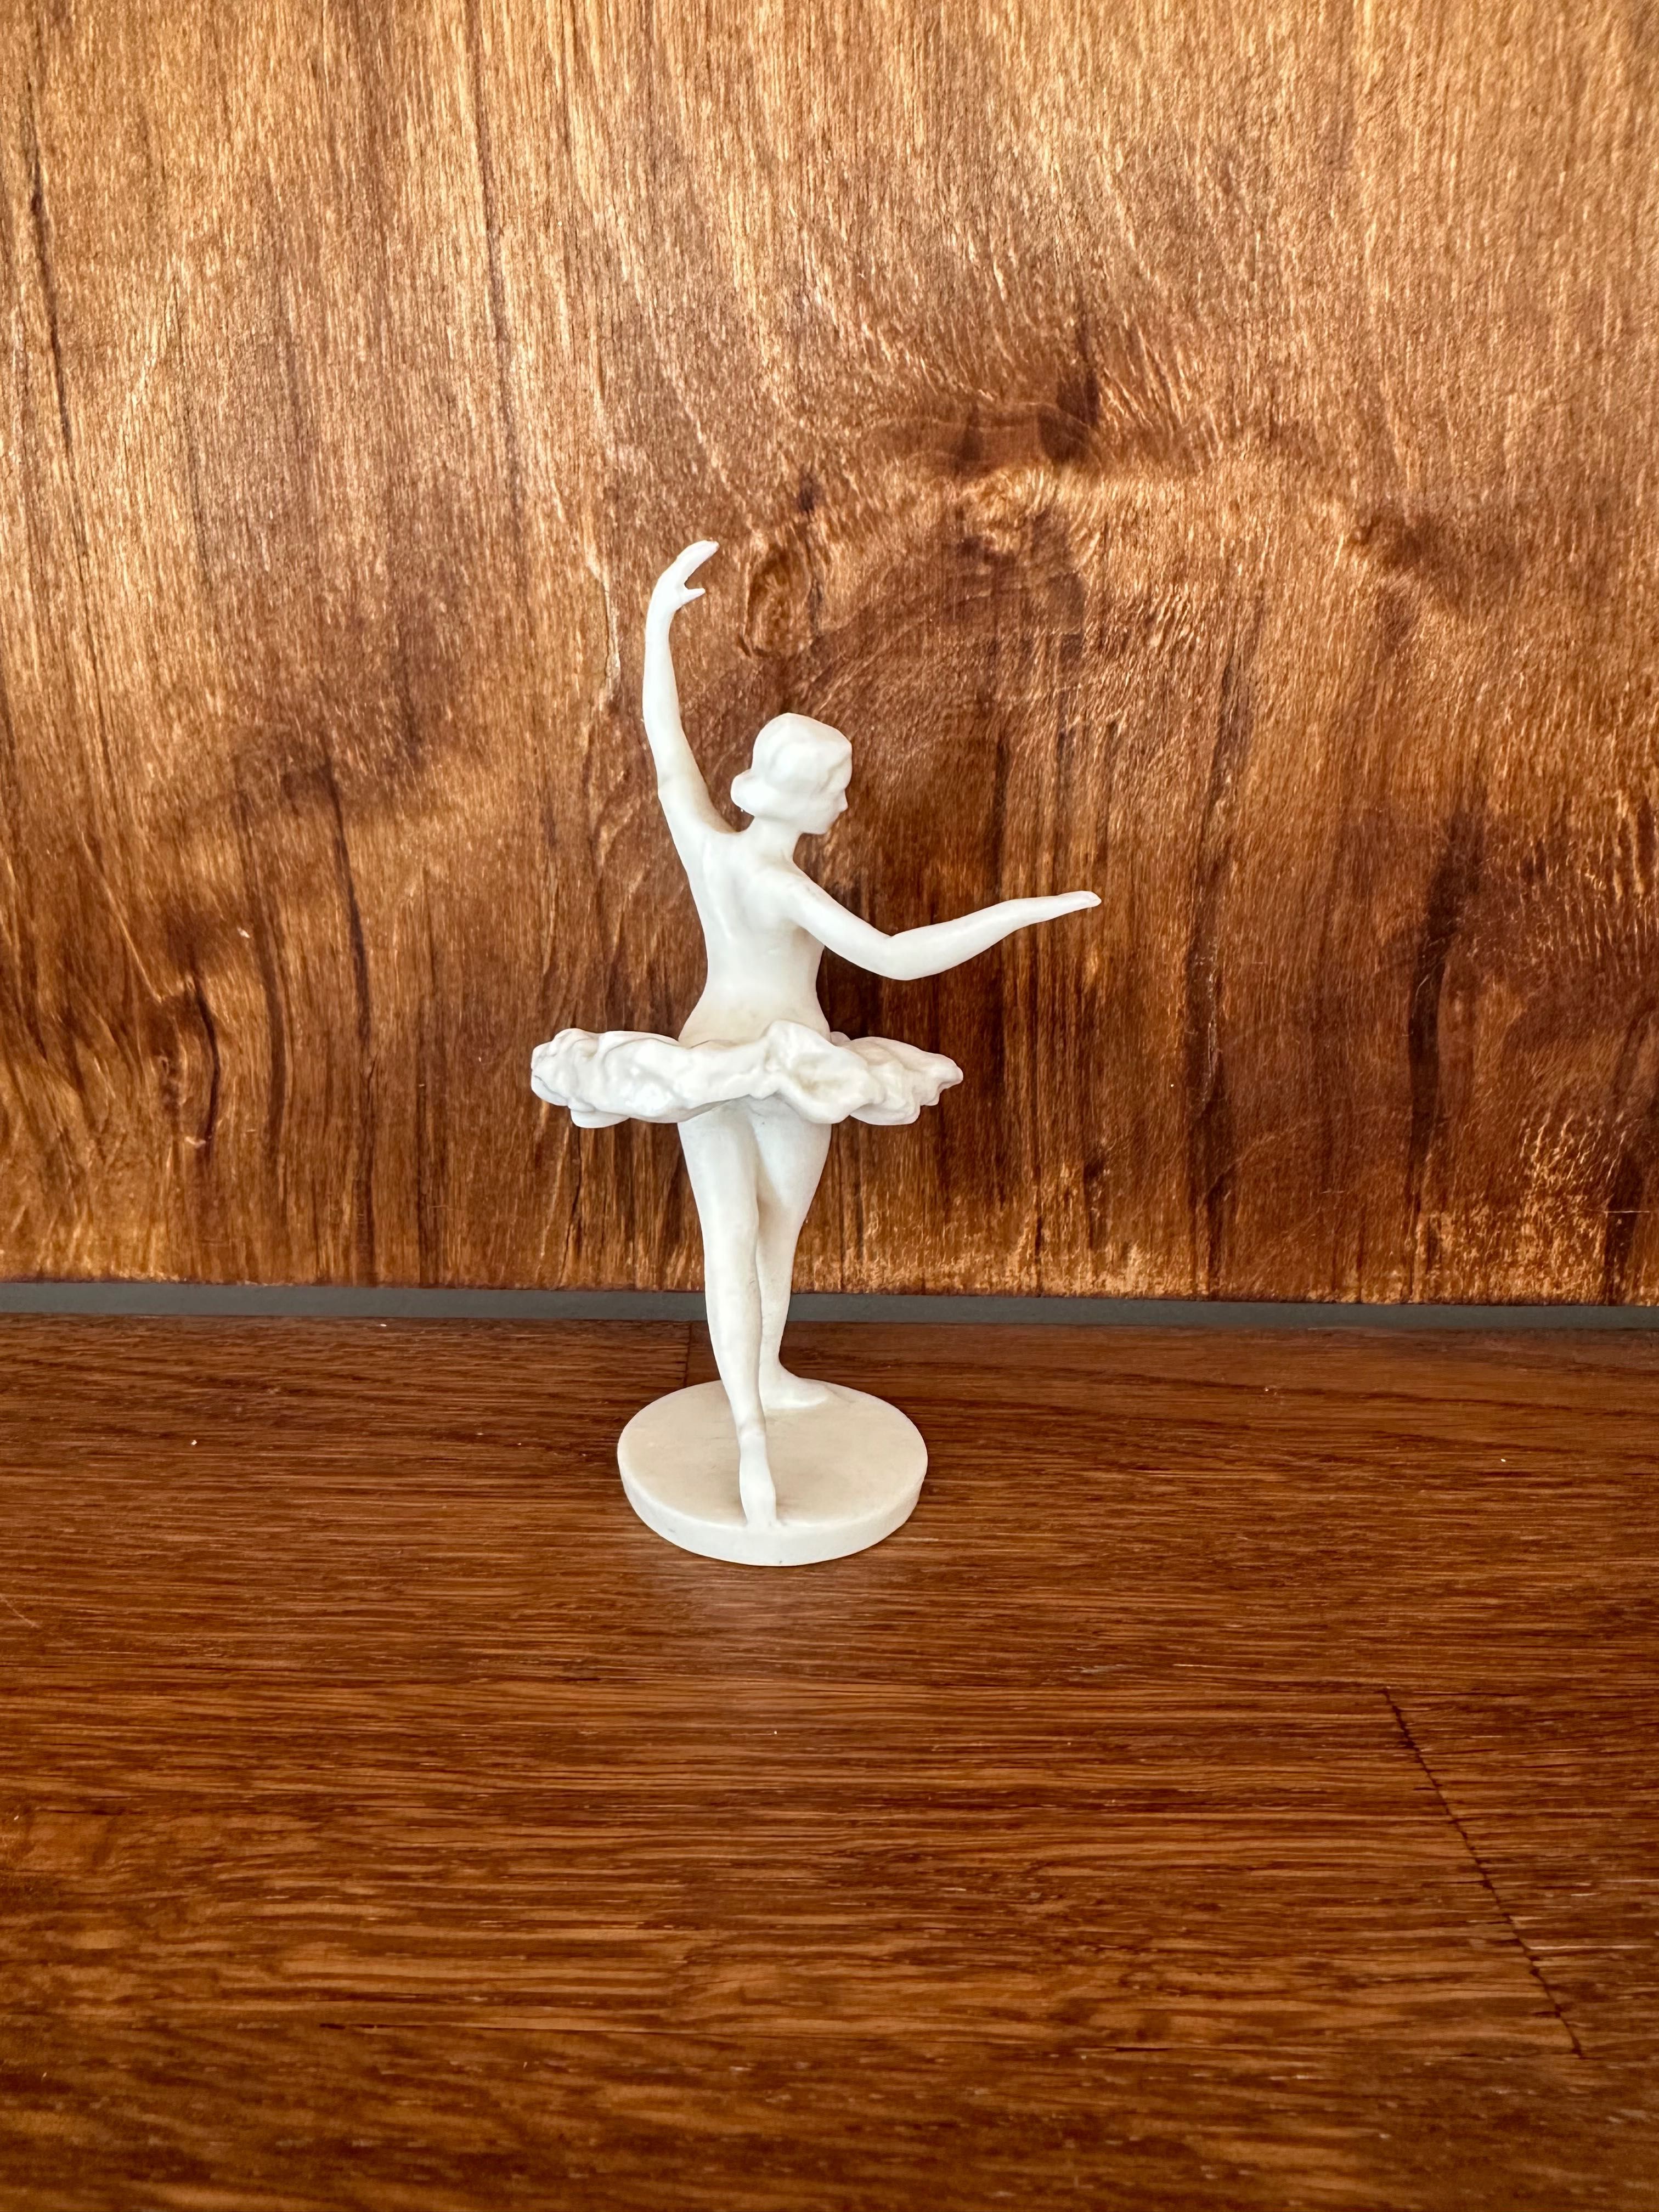 Танцююча балерина, пластик 50-60 роки минулого століття